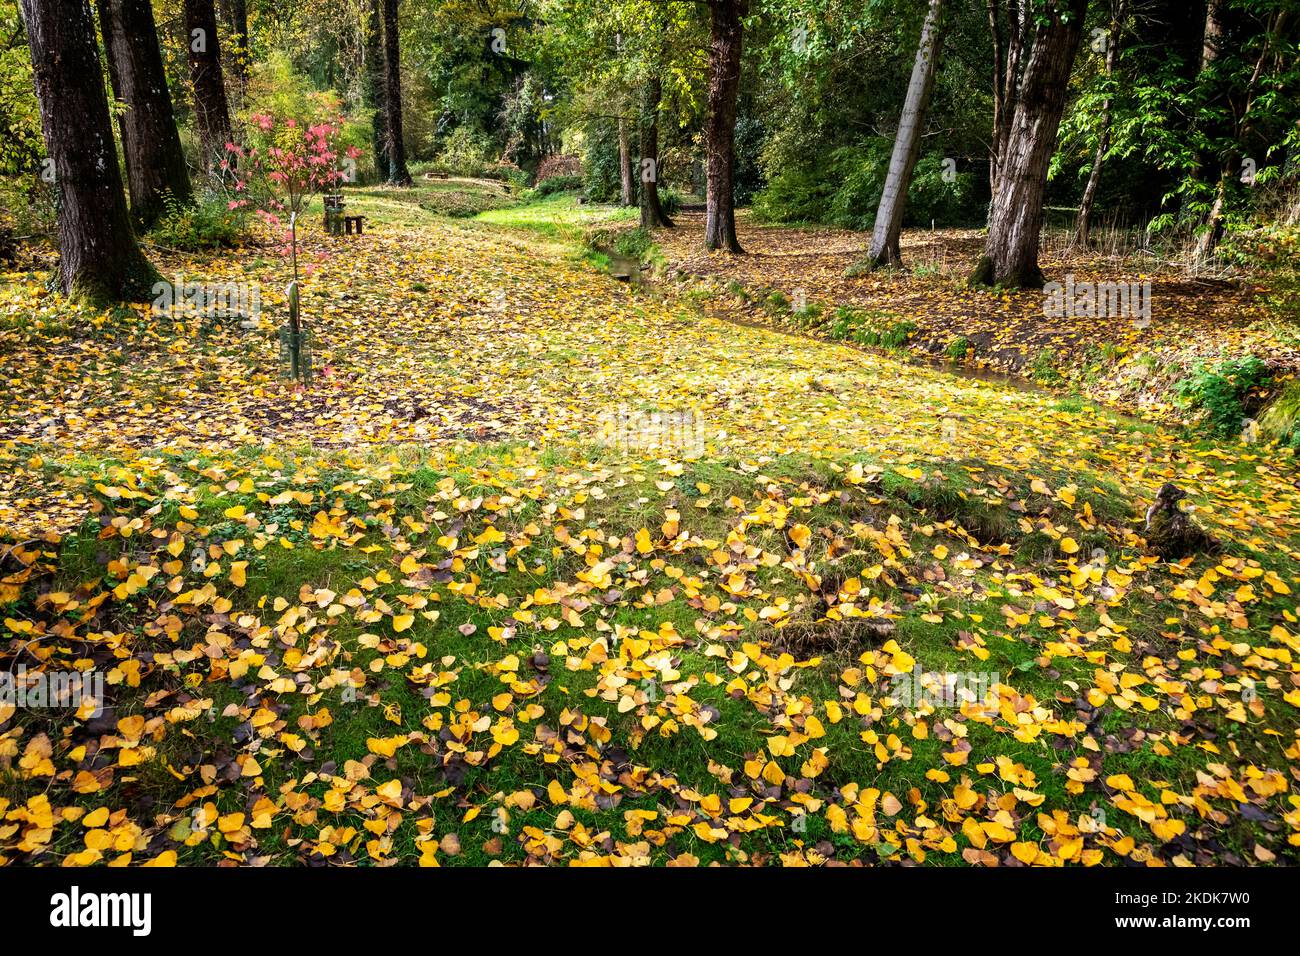 Im Herbst fallen die Blätter, wodurch ein schöner Teppich aus Gelb- und Brauntönen entsteht Stockfoto